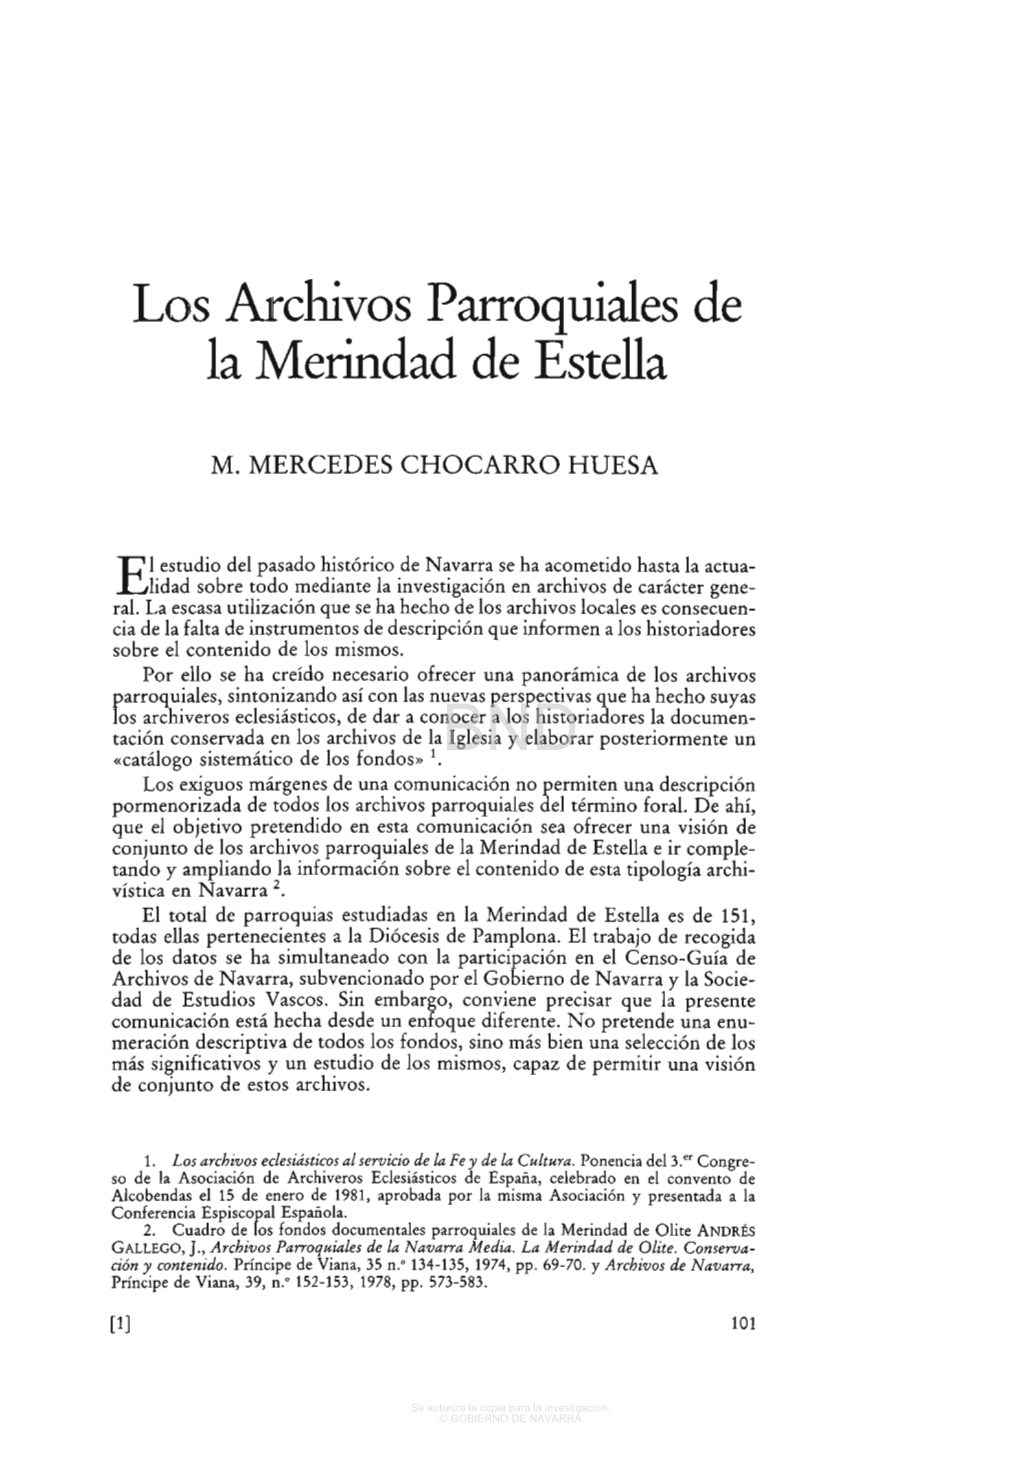 Los Archivos Parroquiales De La Merindad De Estella